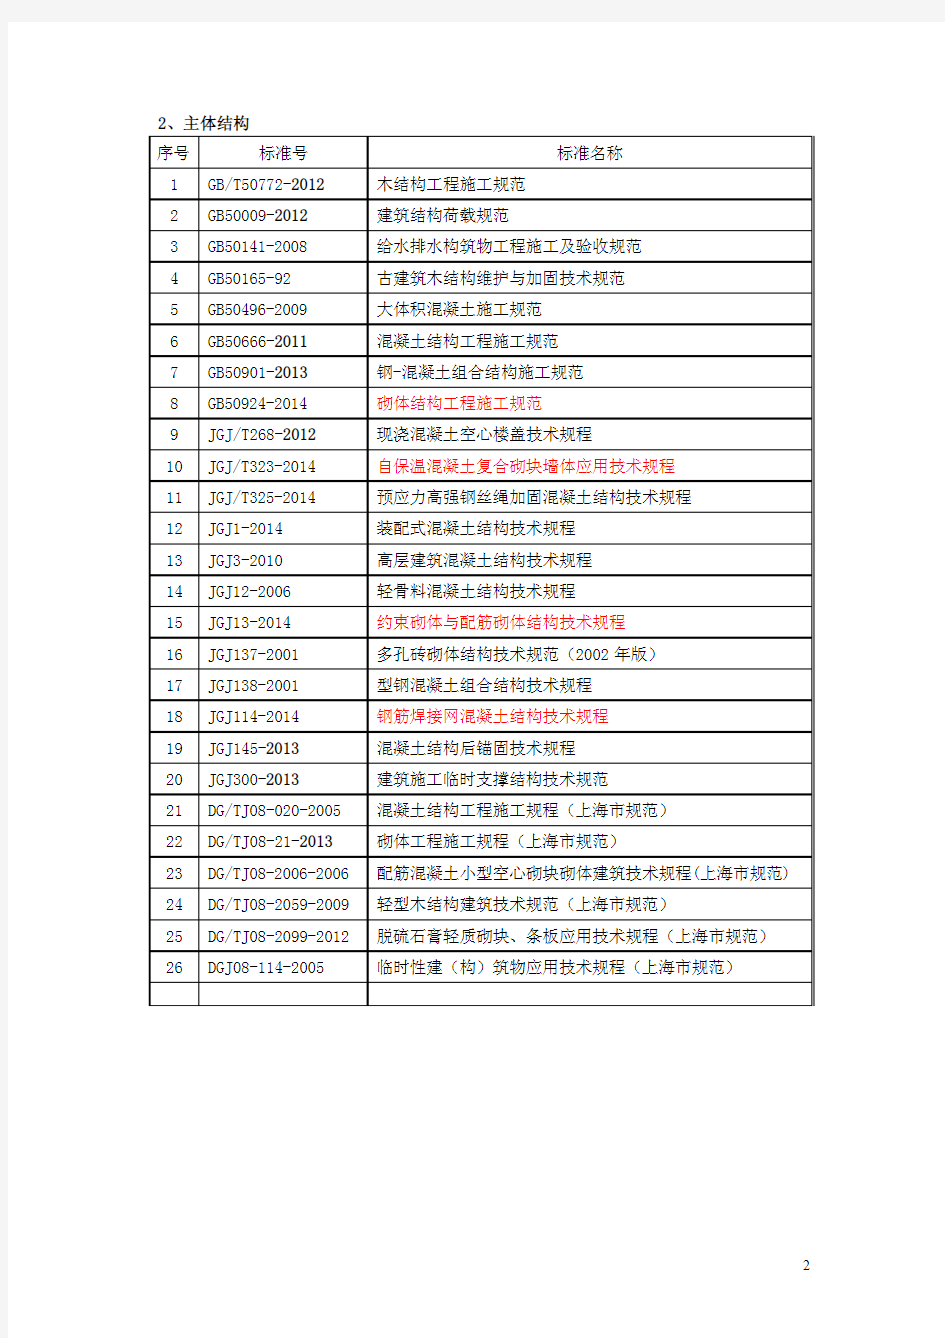 房屋建筑工程涉及的常用规范(含上海市)目录 _更新至2014.12_